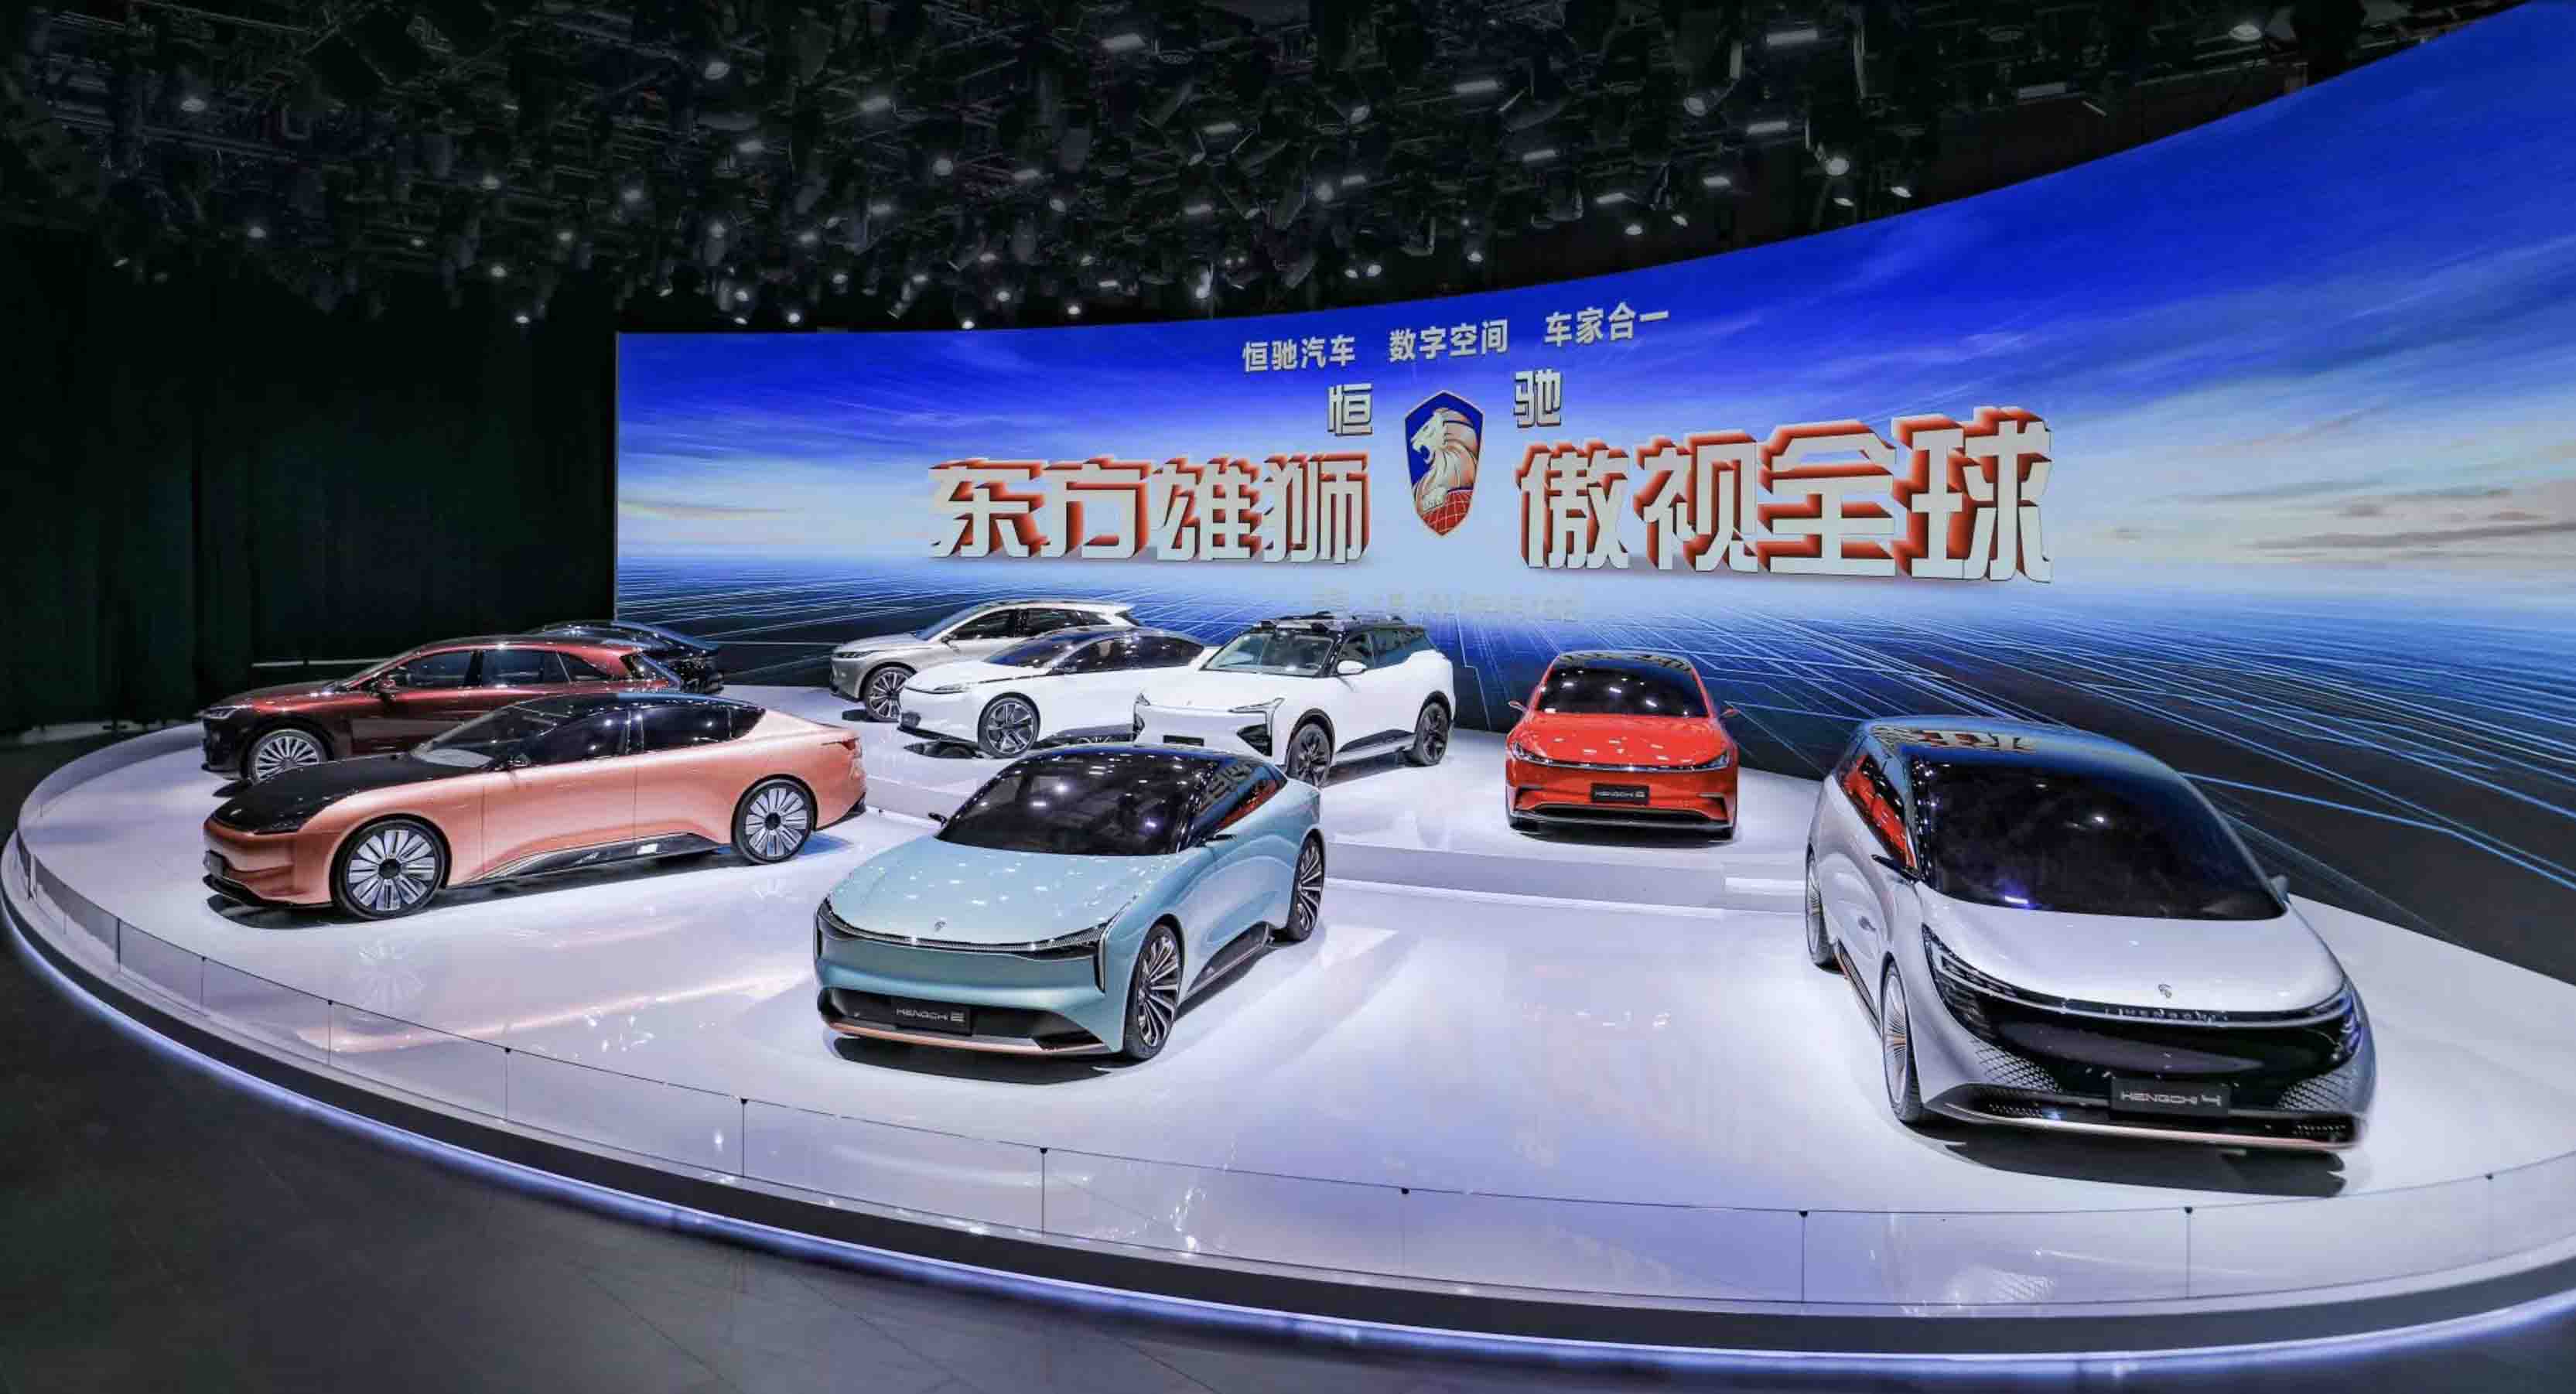 恒大汽车携恒驰9款车型首次亮相上海国际车展,车型覆盖a到d所有级别